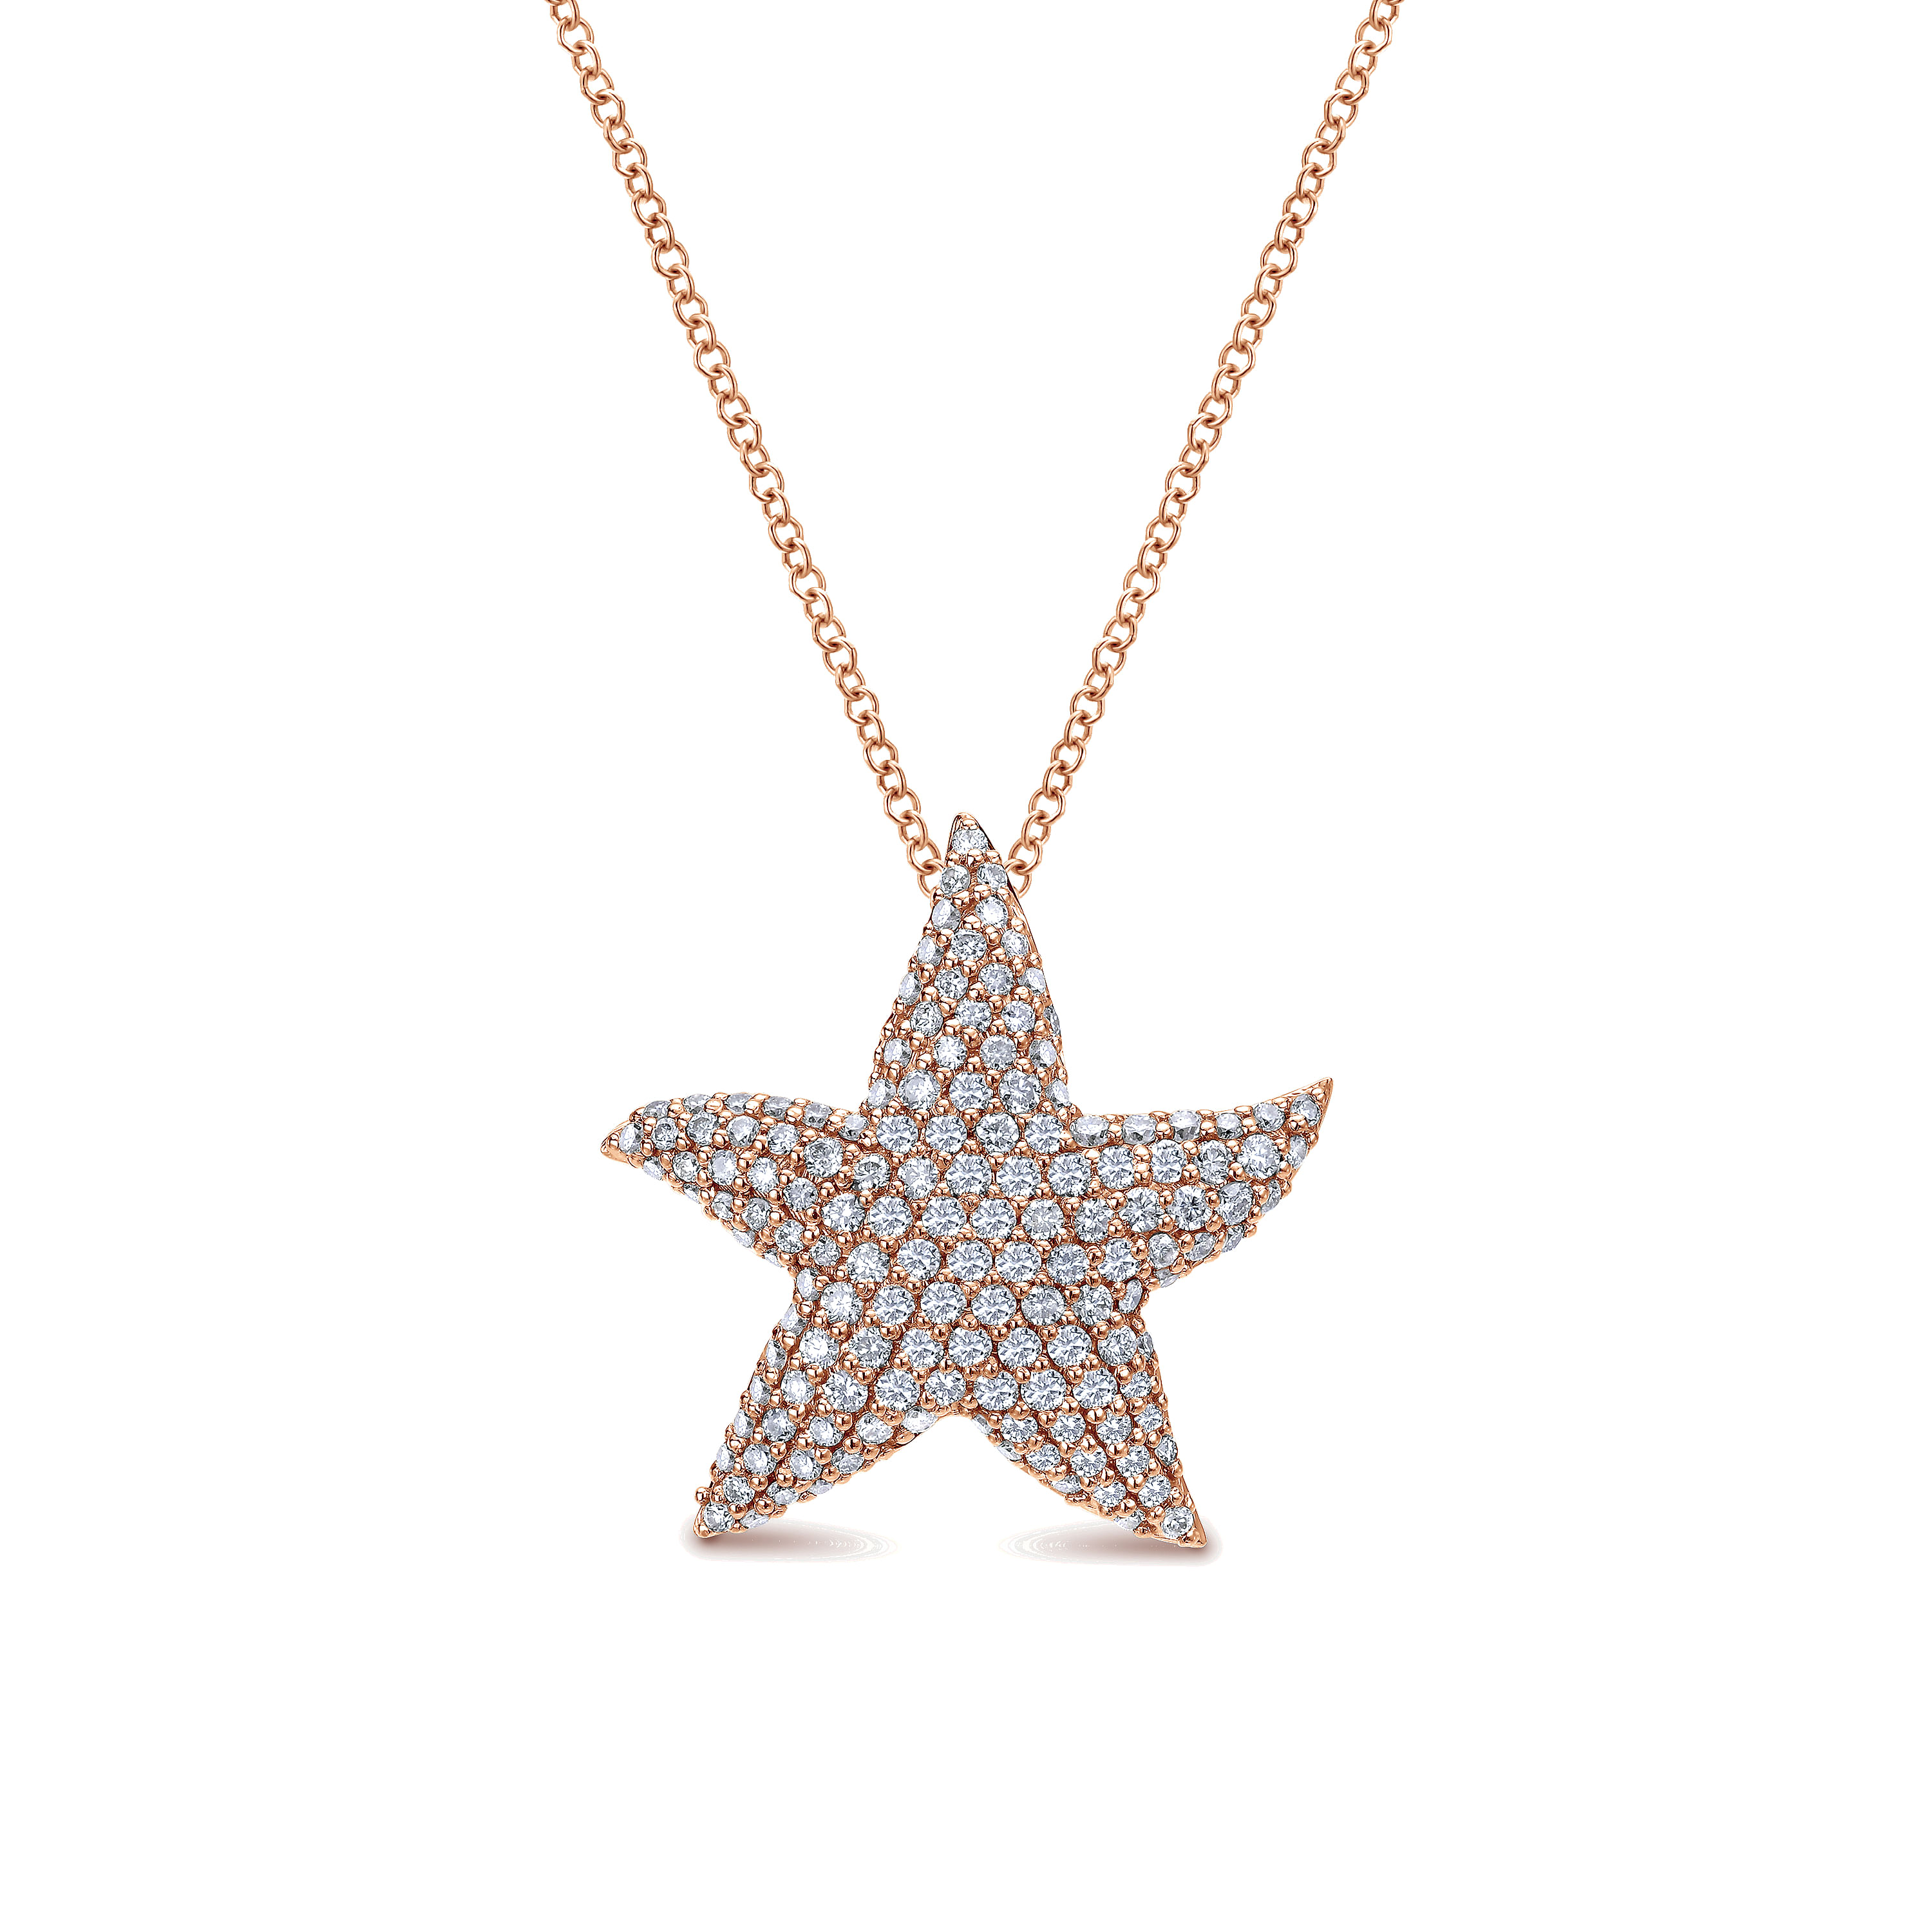 18 inch 14K Rose Gold Pavé Diamond Star Pendant Necklace